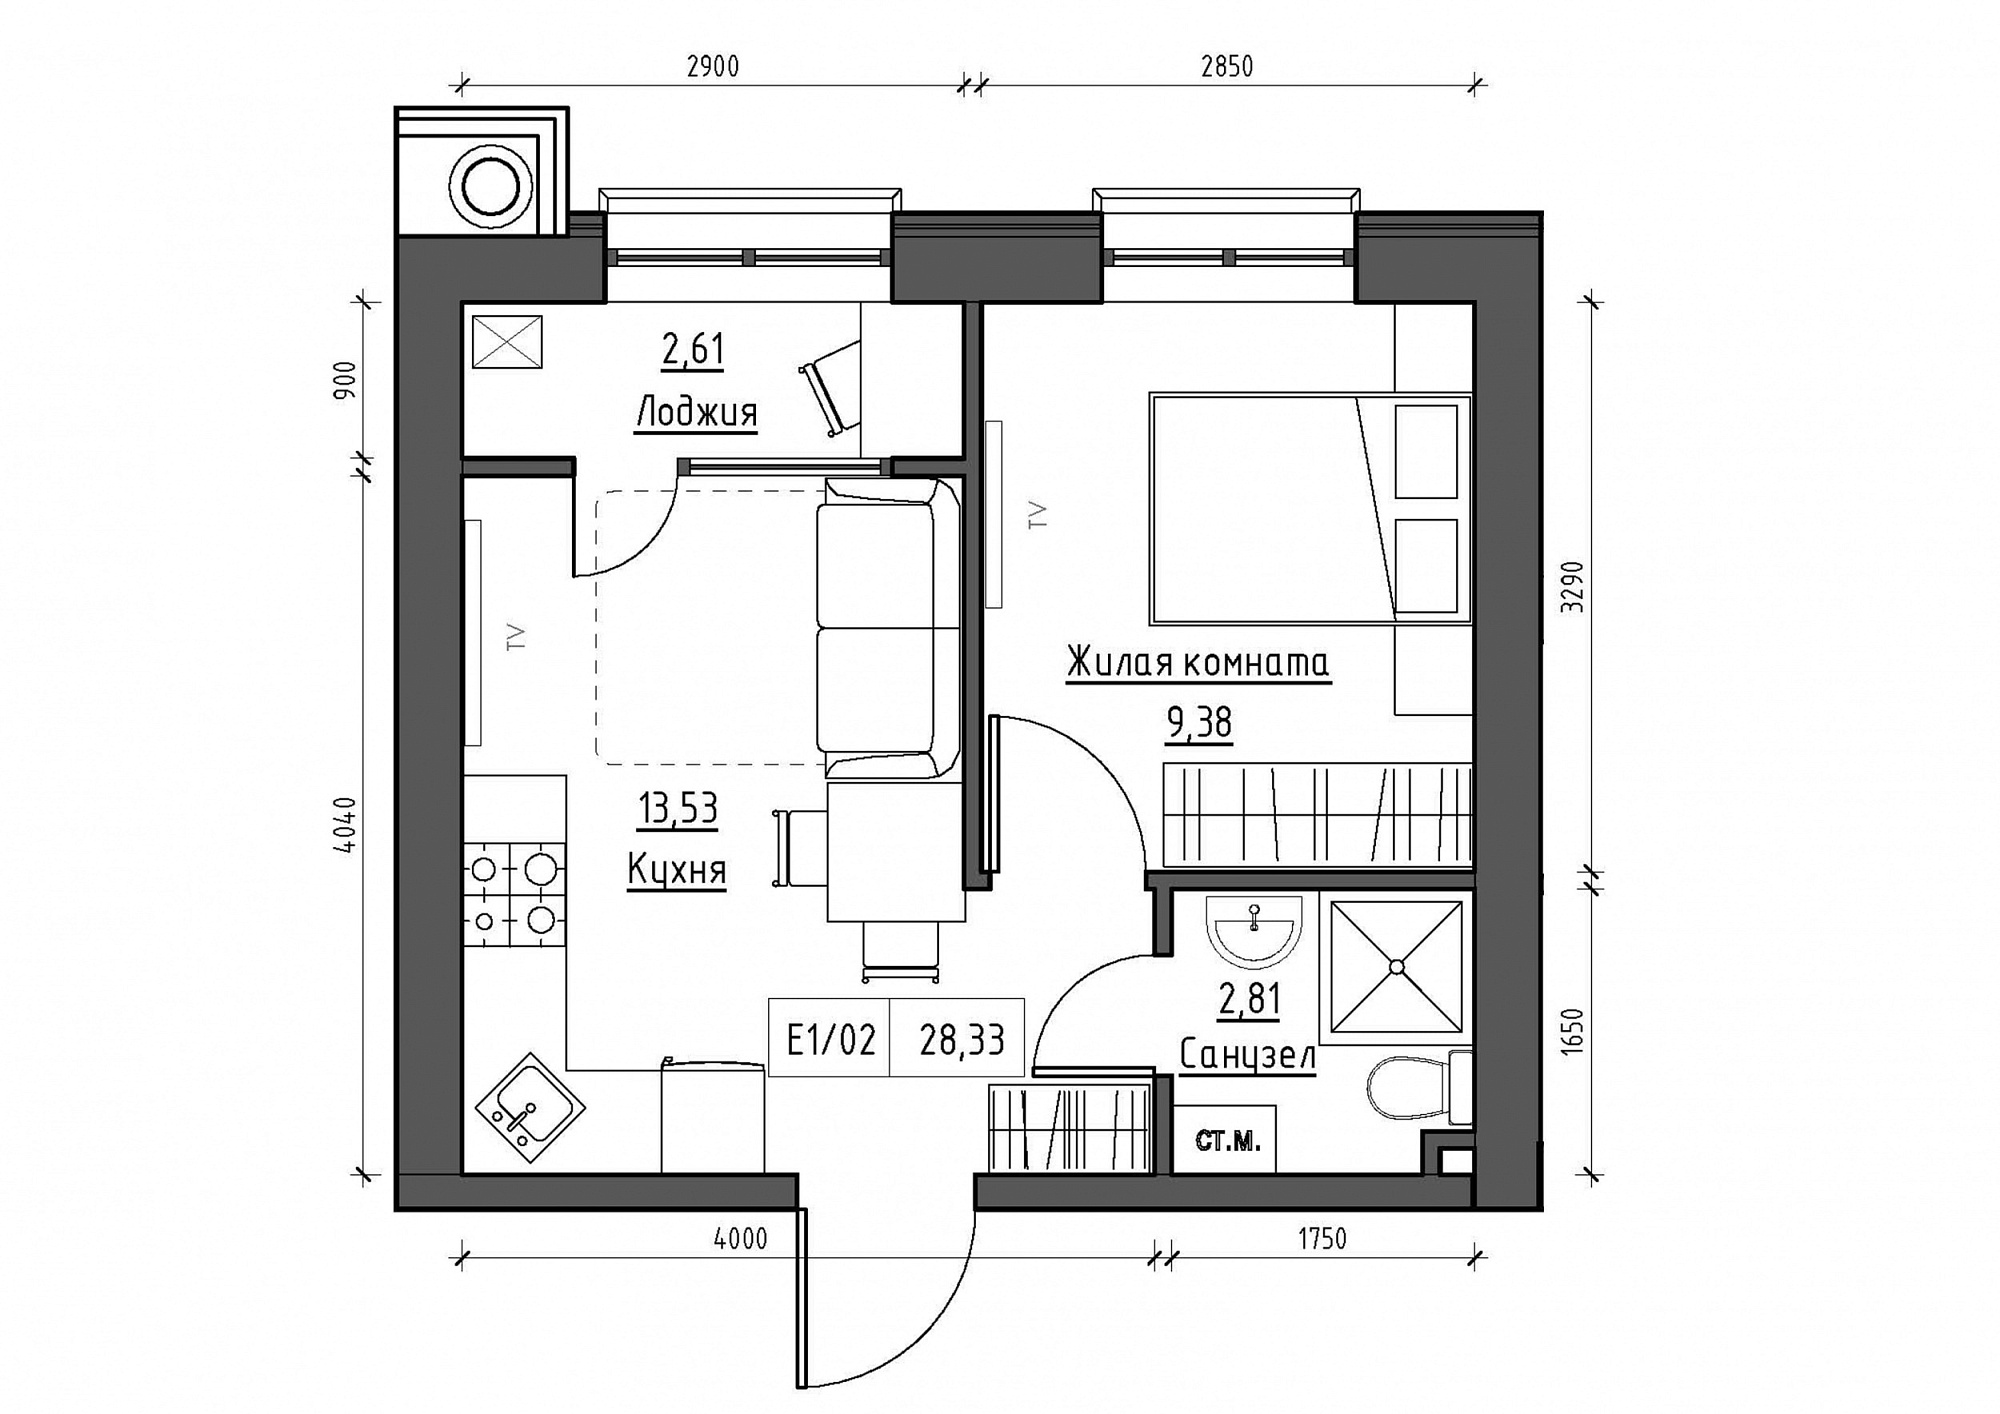 Планування 1-к квартира площею 28.33м2, KS-011-05/0018.